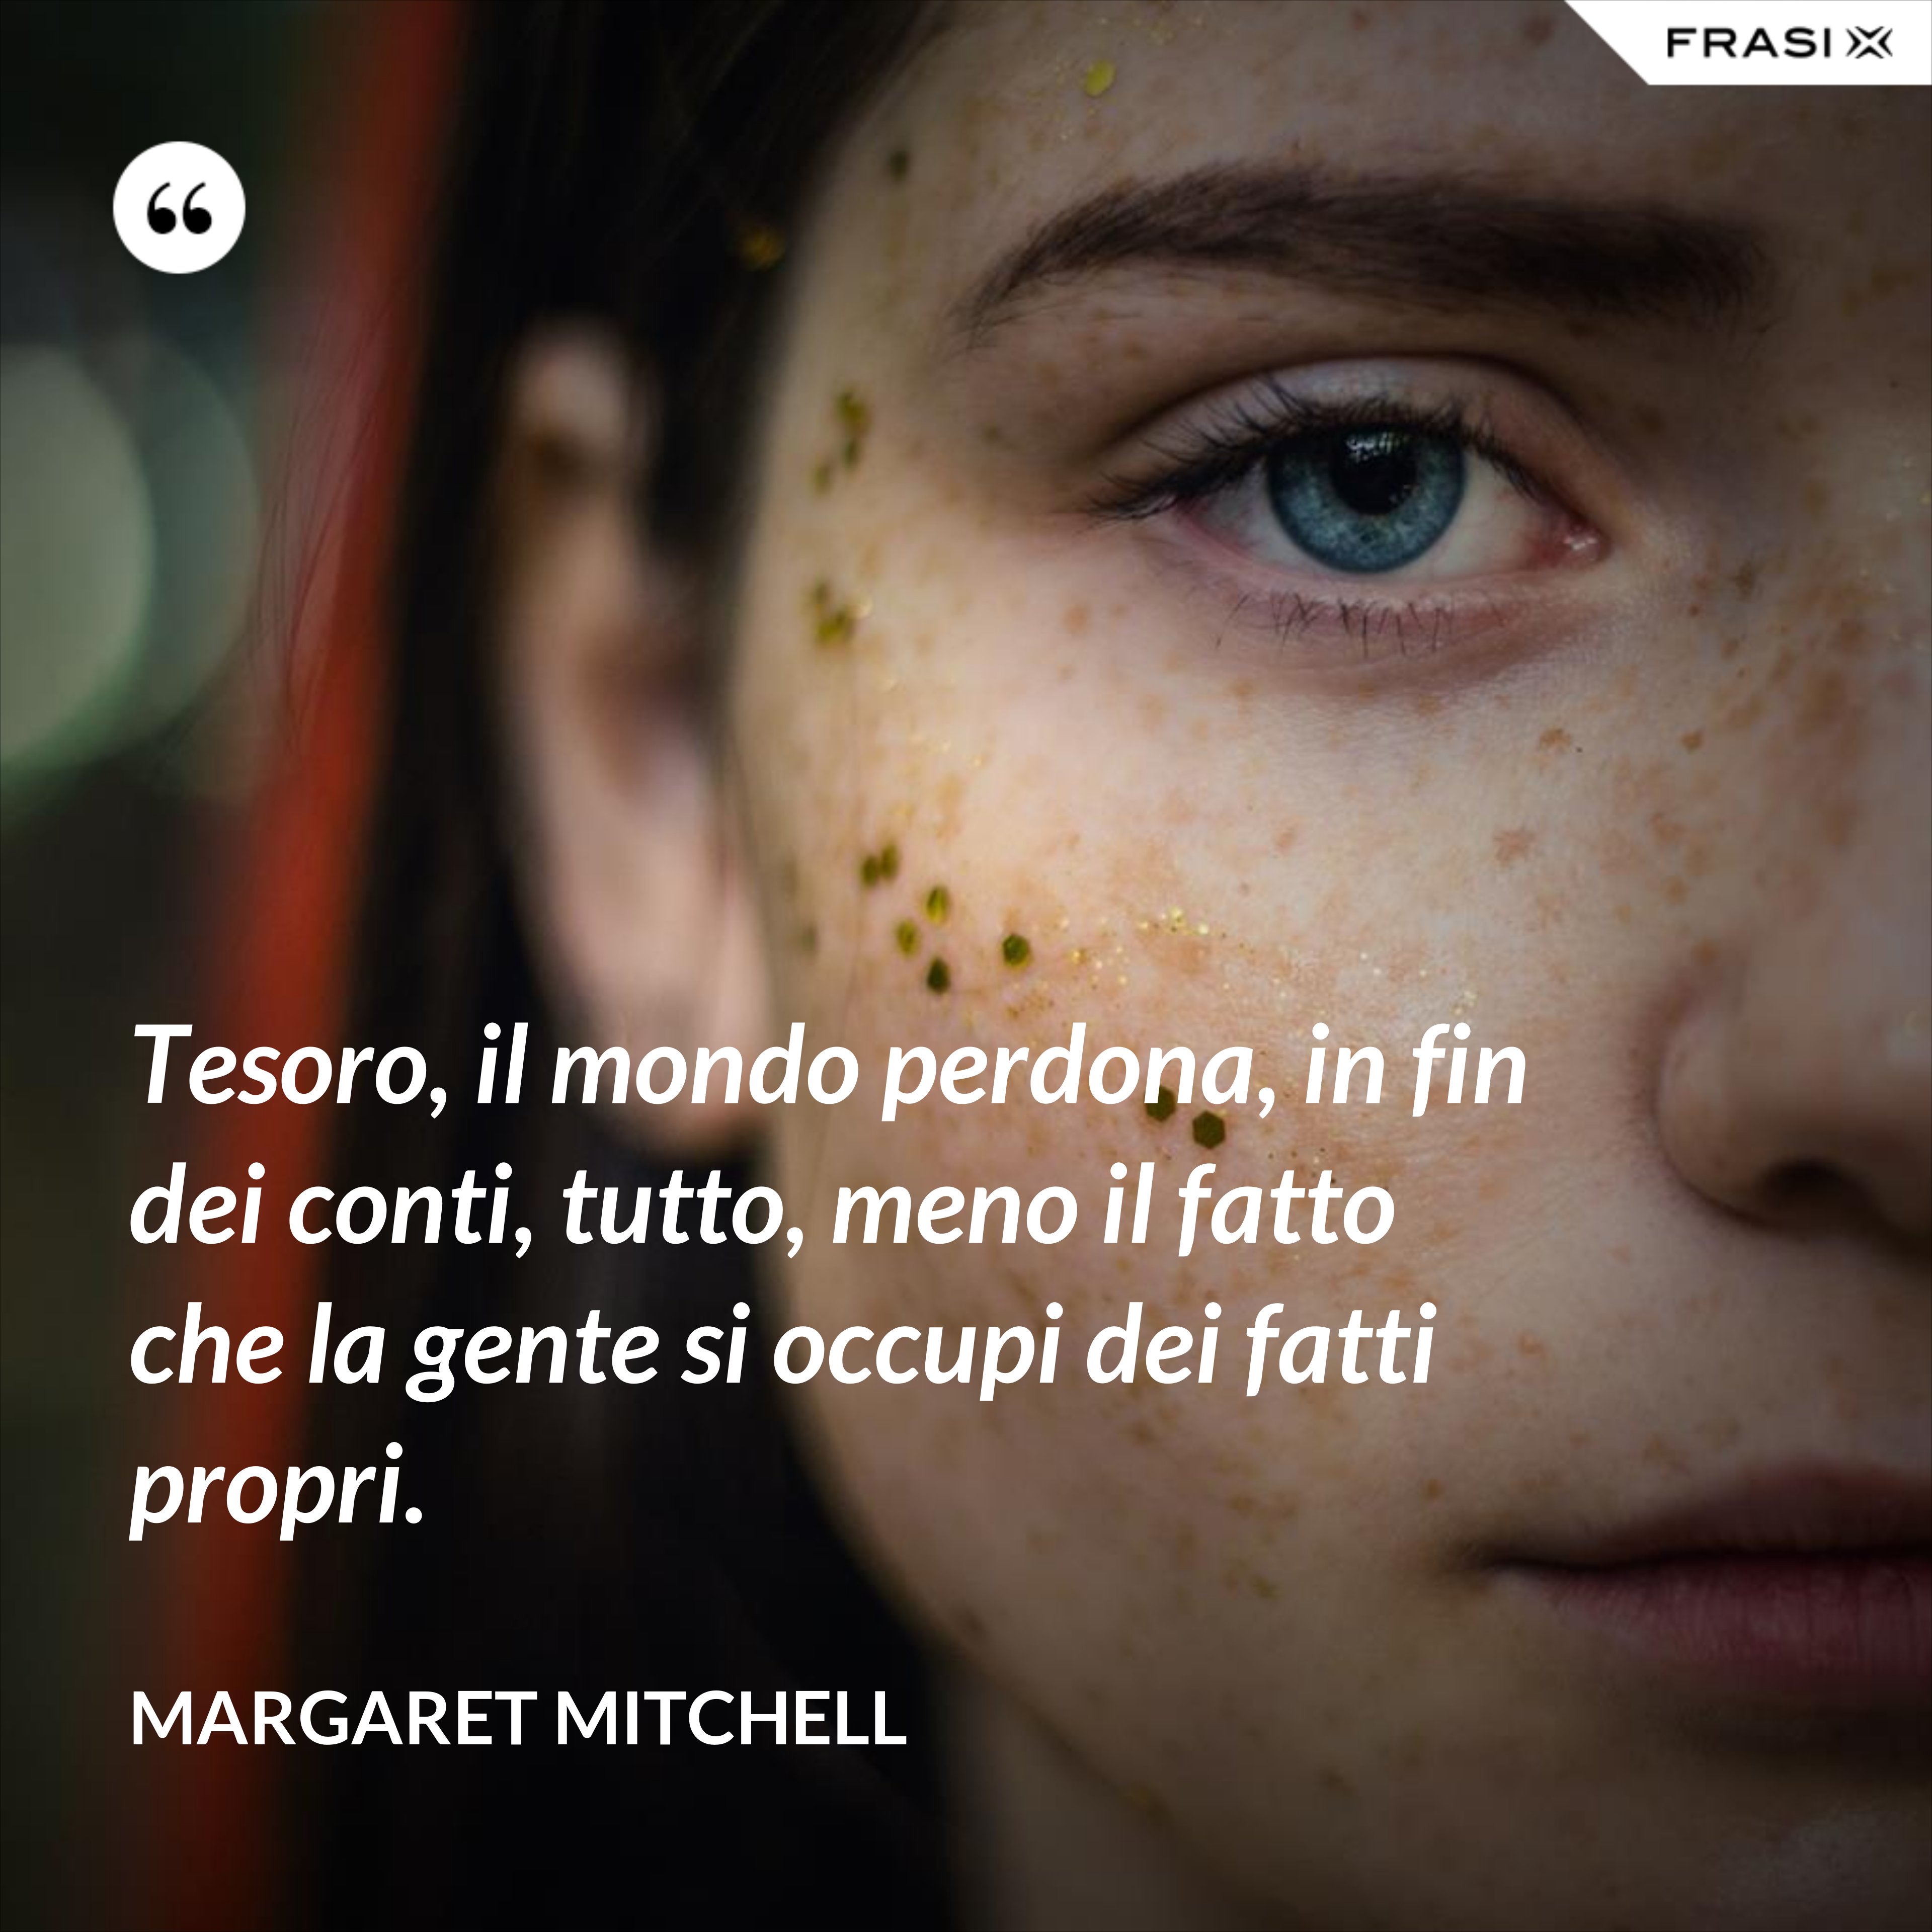 Tesoro, il mondo perdona, in fin dei conti, tutto, meno il fatto che la gente si occupi dei fatti propri. - Margaret Mitchell